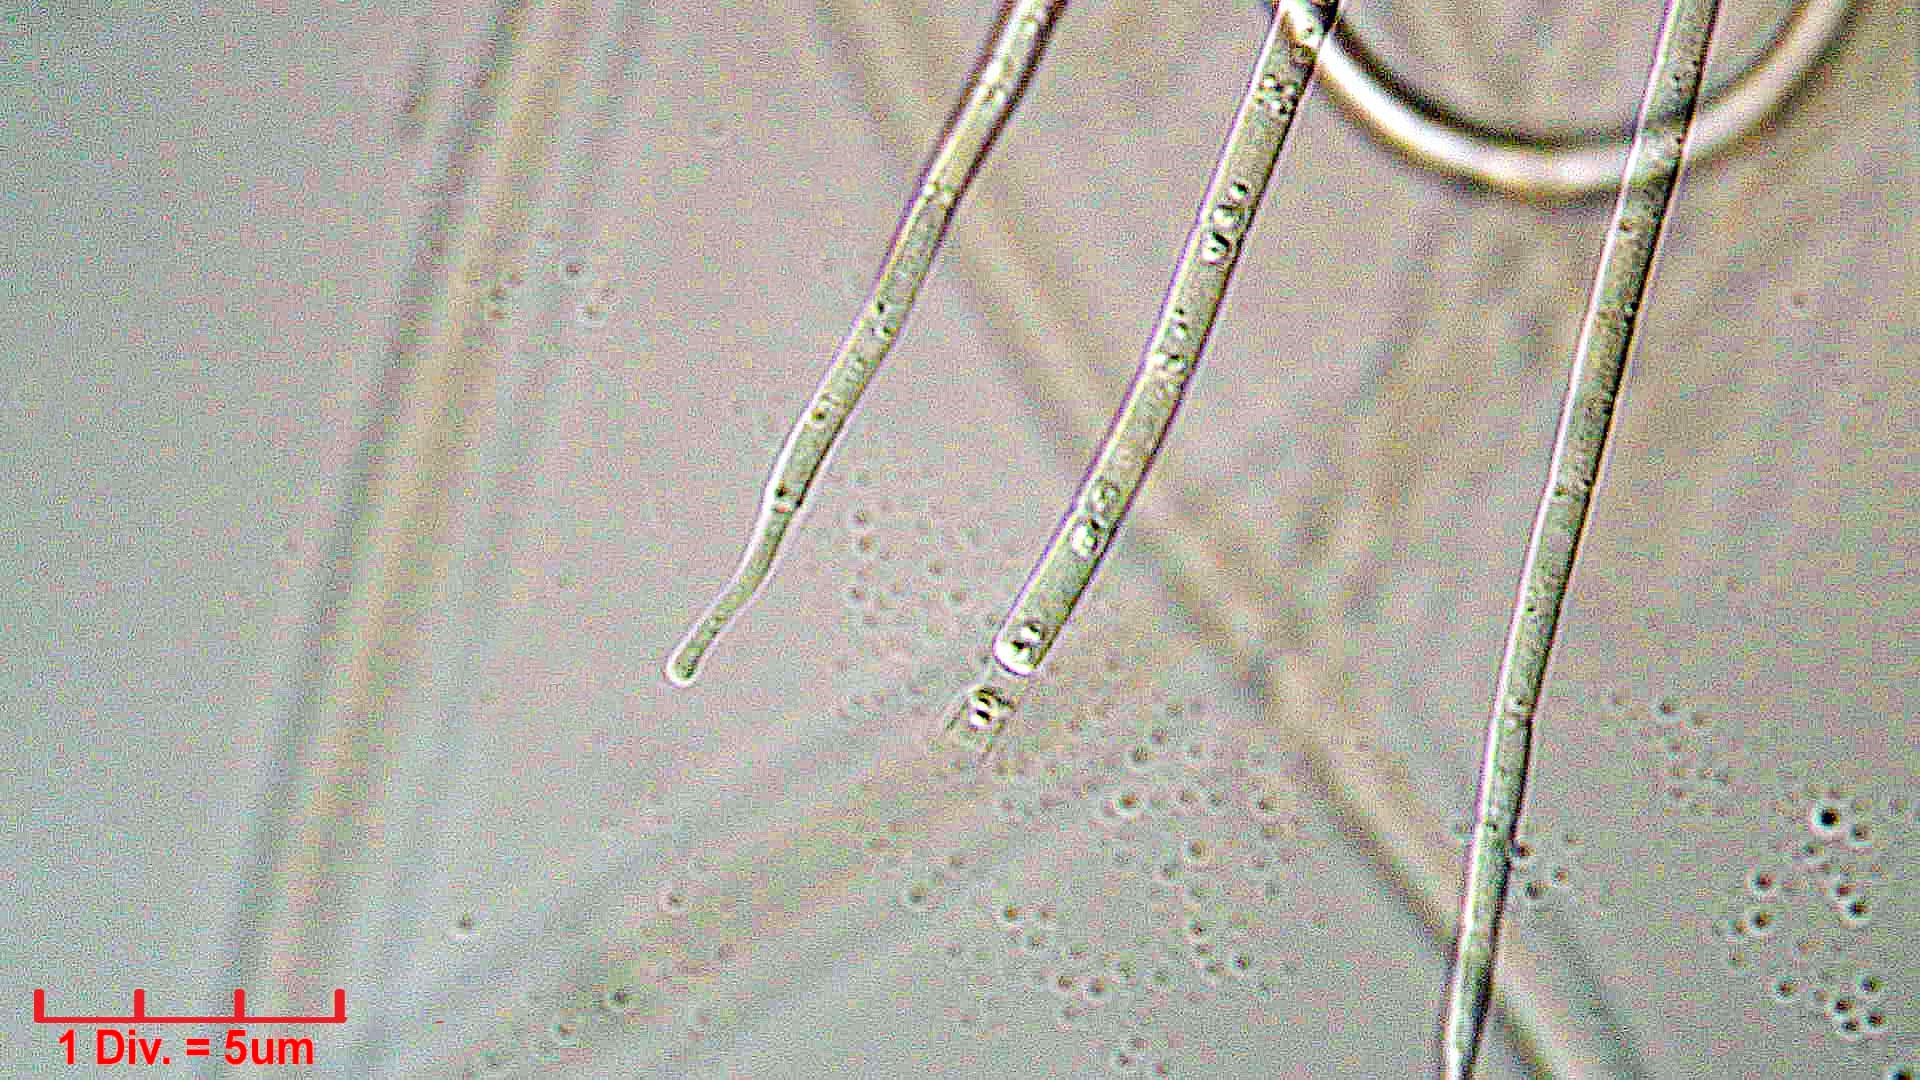 ./Cyanobacteria/Oscillatoriales/Coleofasciculaceae/Geitlerinema/splendidum/294.jpg